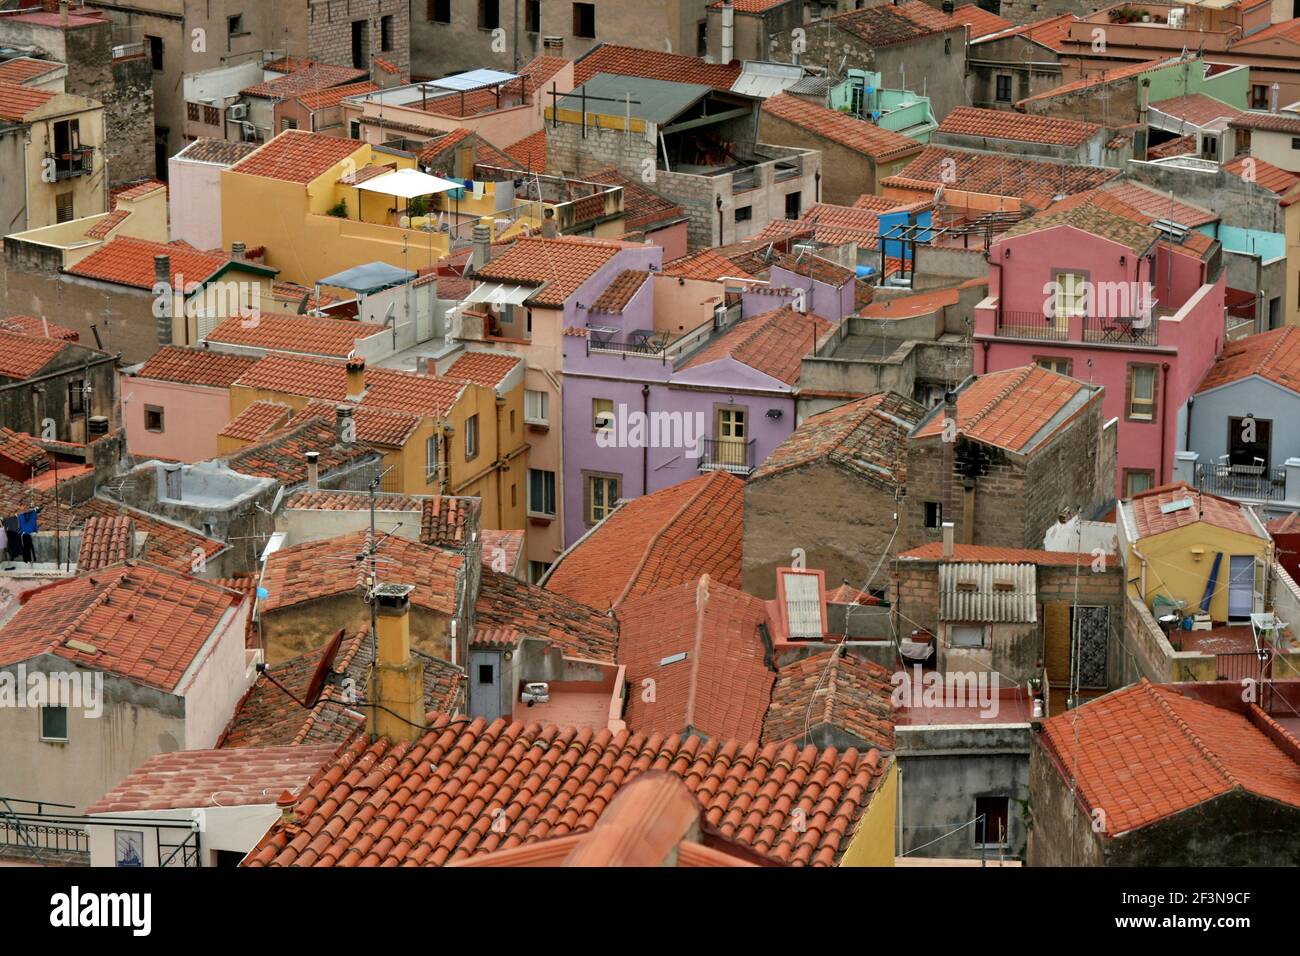 Bosa ist eine farbenfrohe Stadt mit Gebäuden mit roten Ziegeldächern, bemalten Wänden und Häusern, die in engen Gassen sehr nah beieinander gebaut wurden. Stockfoto